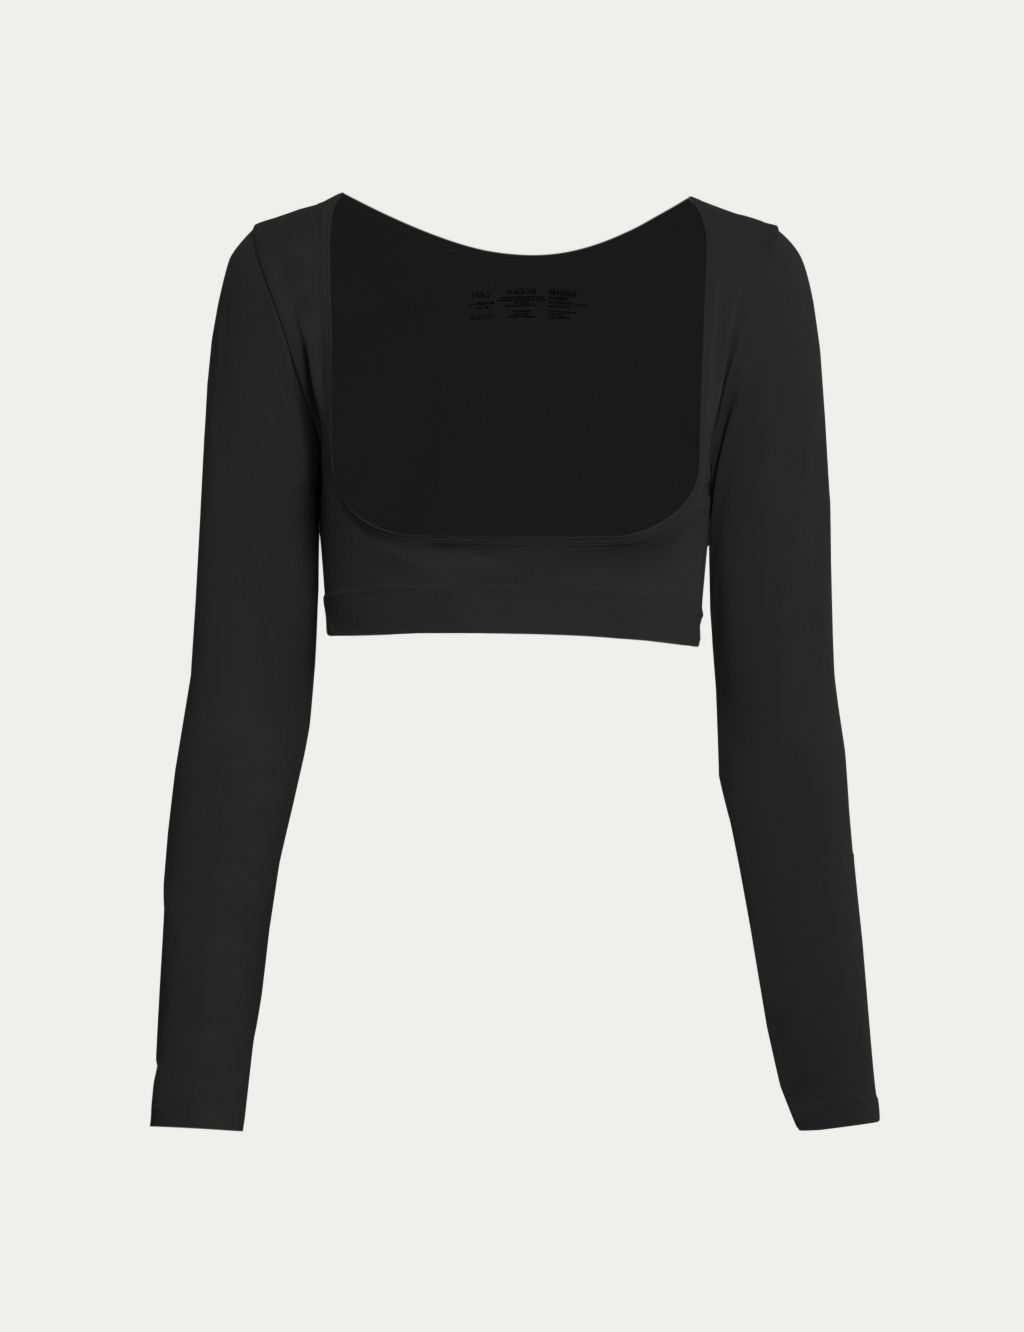 Marks & Spencer FLEXIFIT ARMWEAR - Shapewear - black/mottled black -  Zalando.de